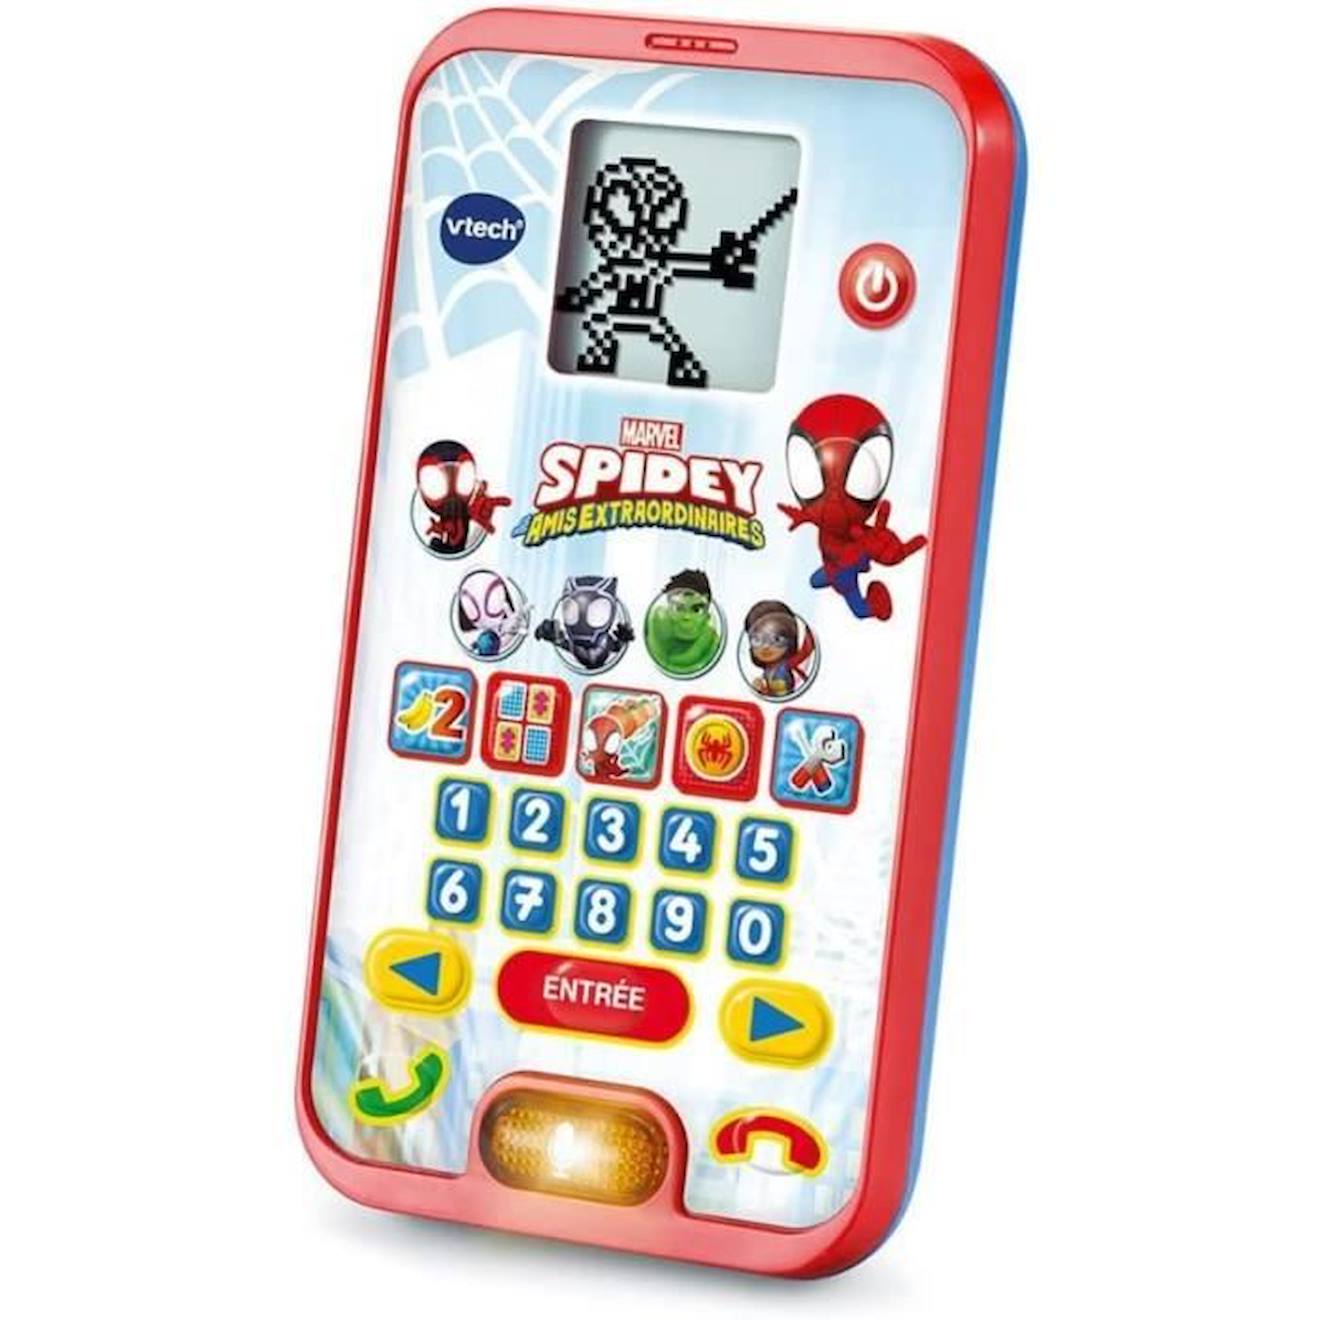 Vtech - Spidey - Le Smartphone Éducatif De Spidey - Enfant - Rouge - Mixte - 3 Ans - Pile Rouge